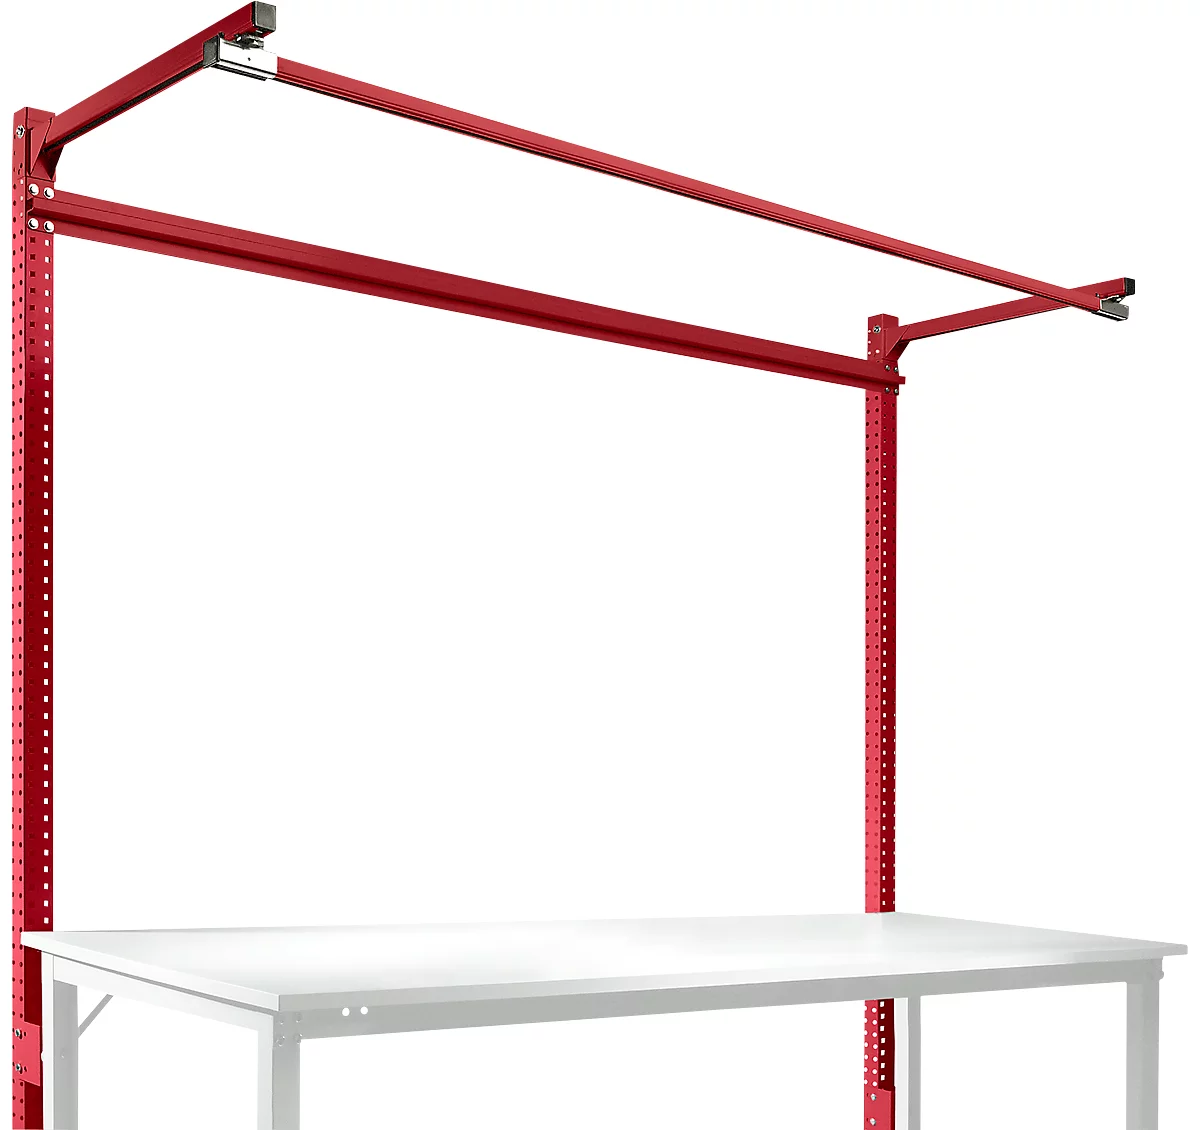 Estructura pórtica adicional con brazo saliente, Mesa básica STANDARD mesa de trabajo/banco de trabajo UNIVERSAL/PROFI, 2000 mm, rojo rubí